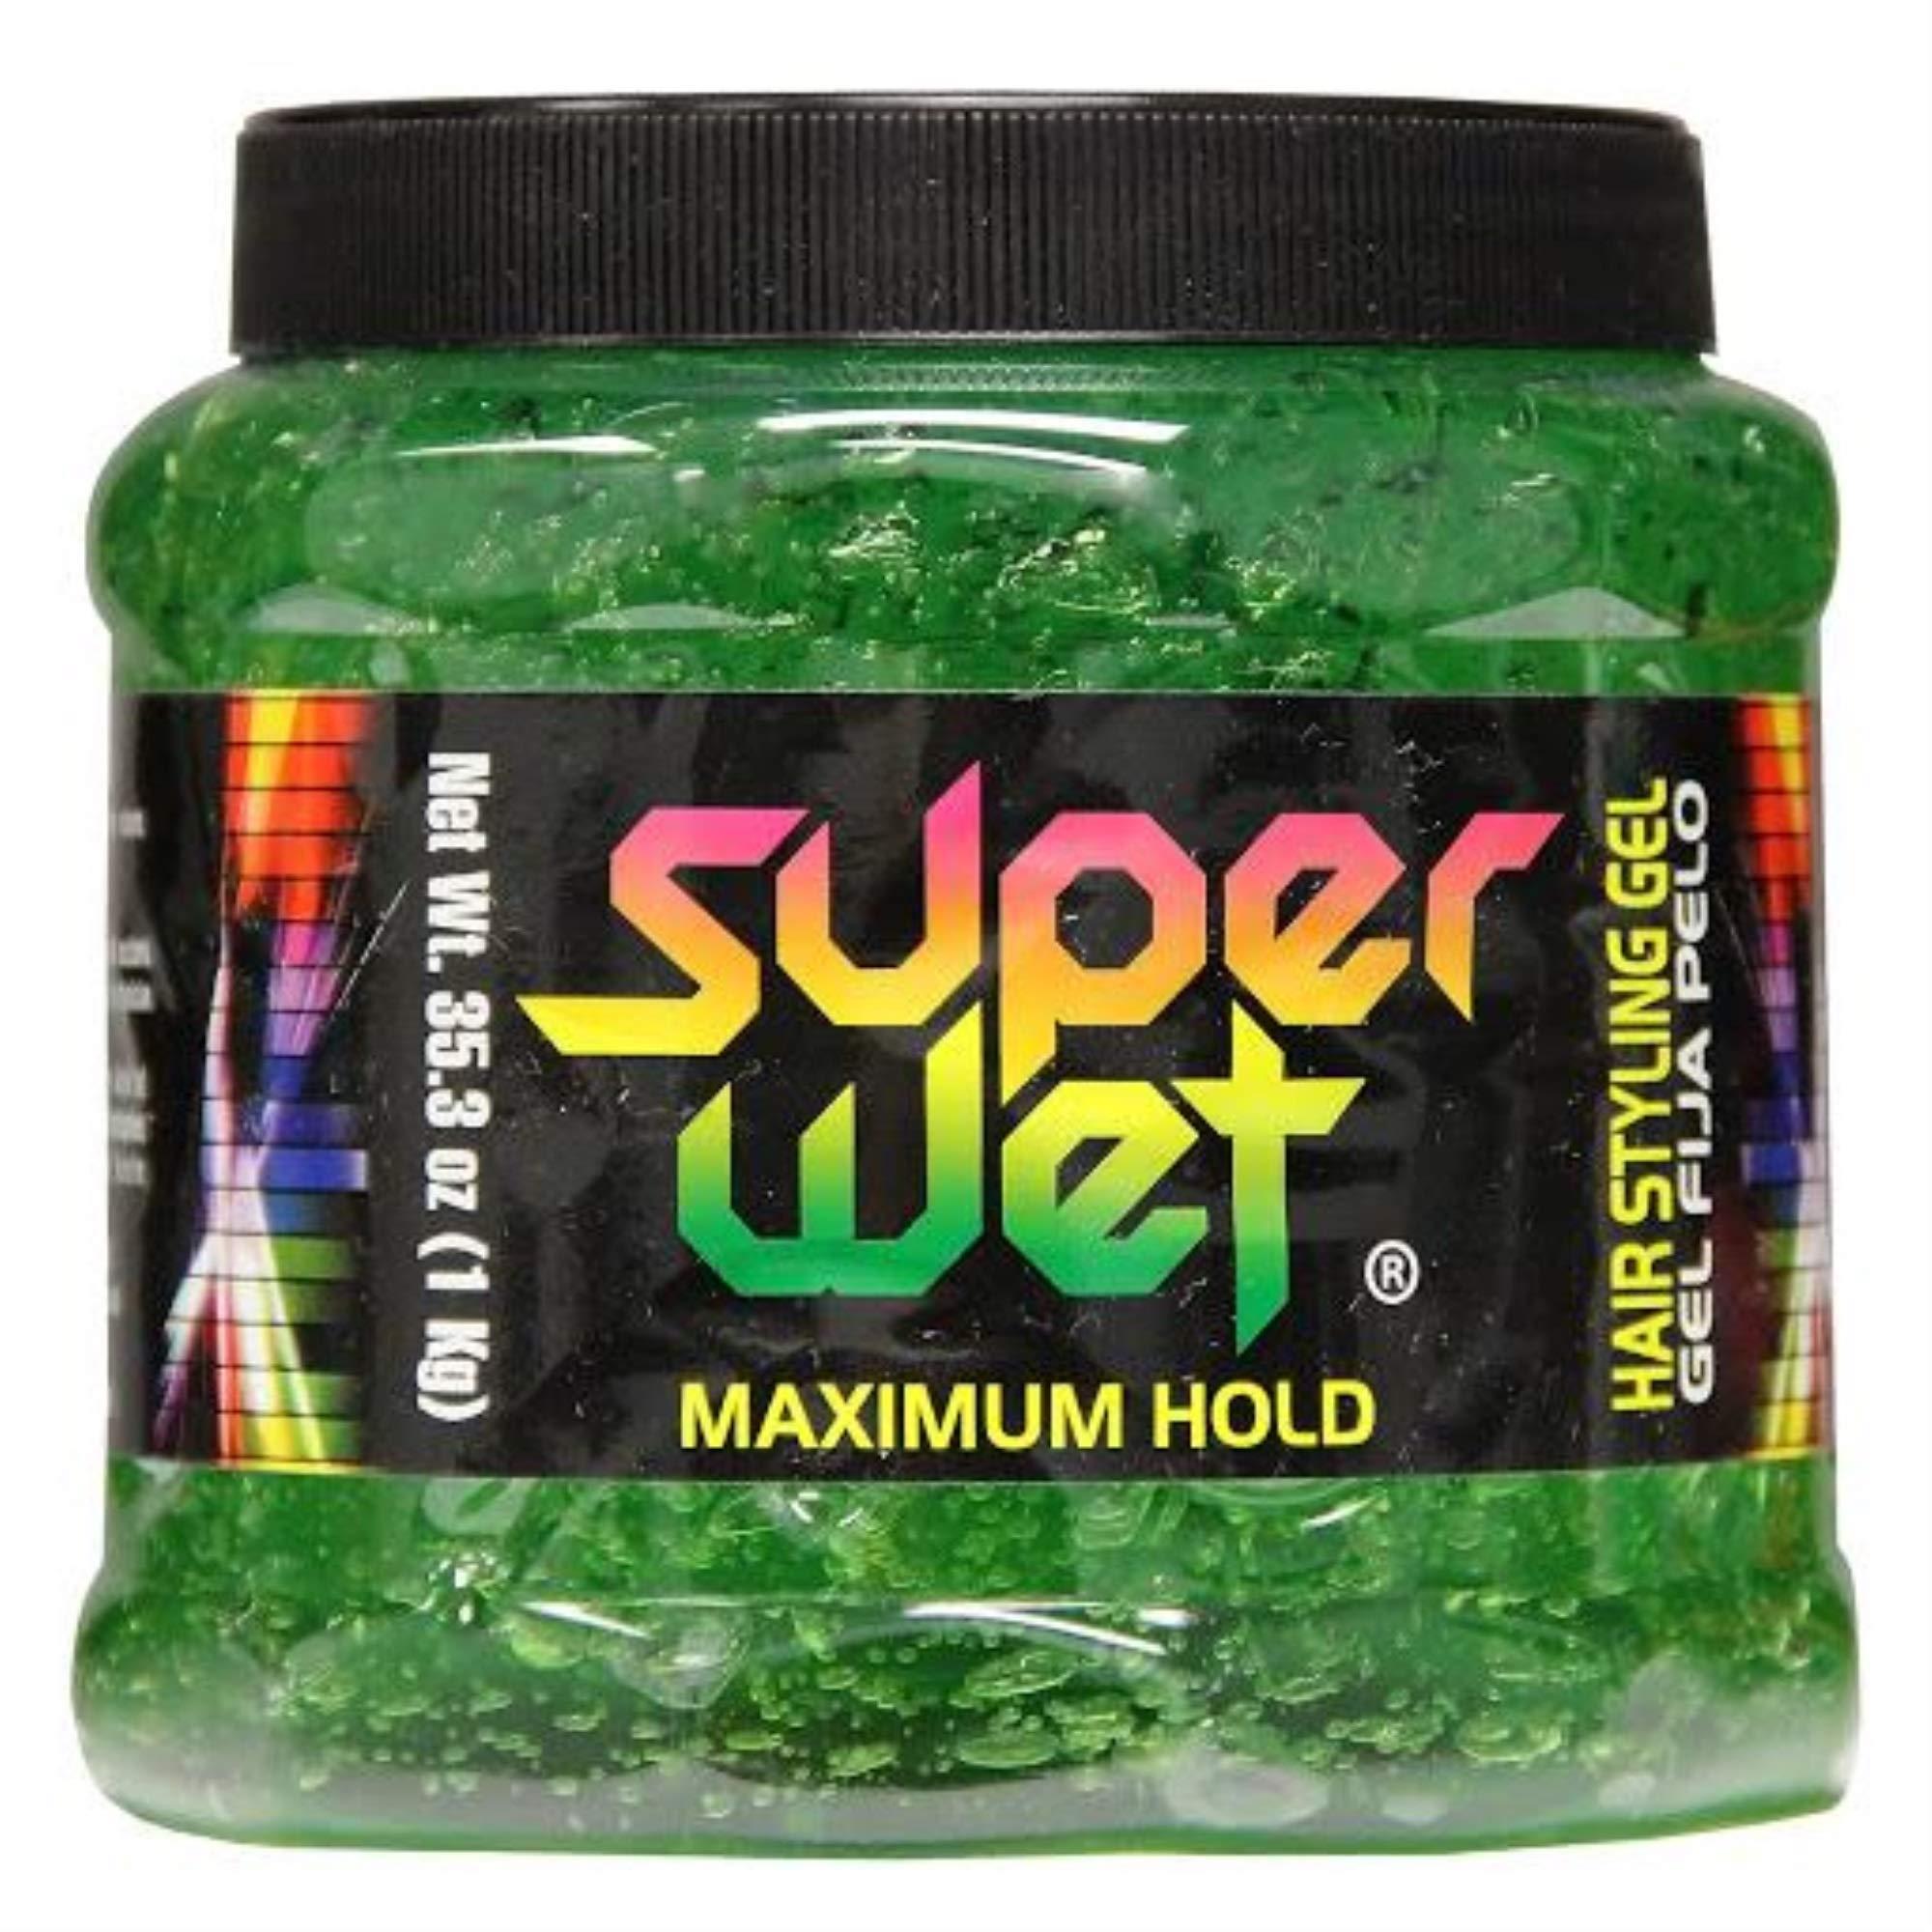 Super Wet Hair Styling Gel Green, 2.2 Pound